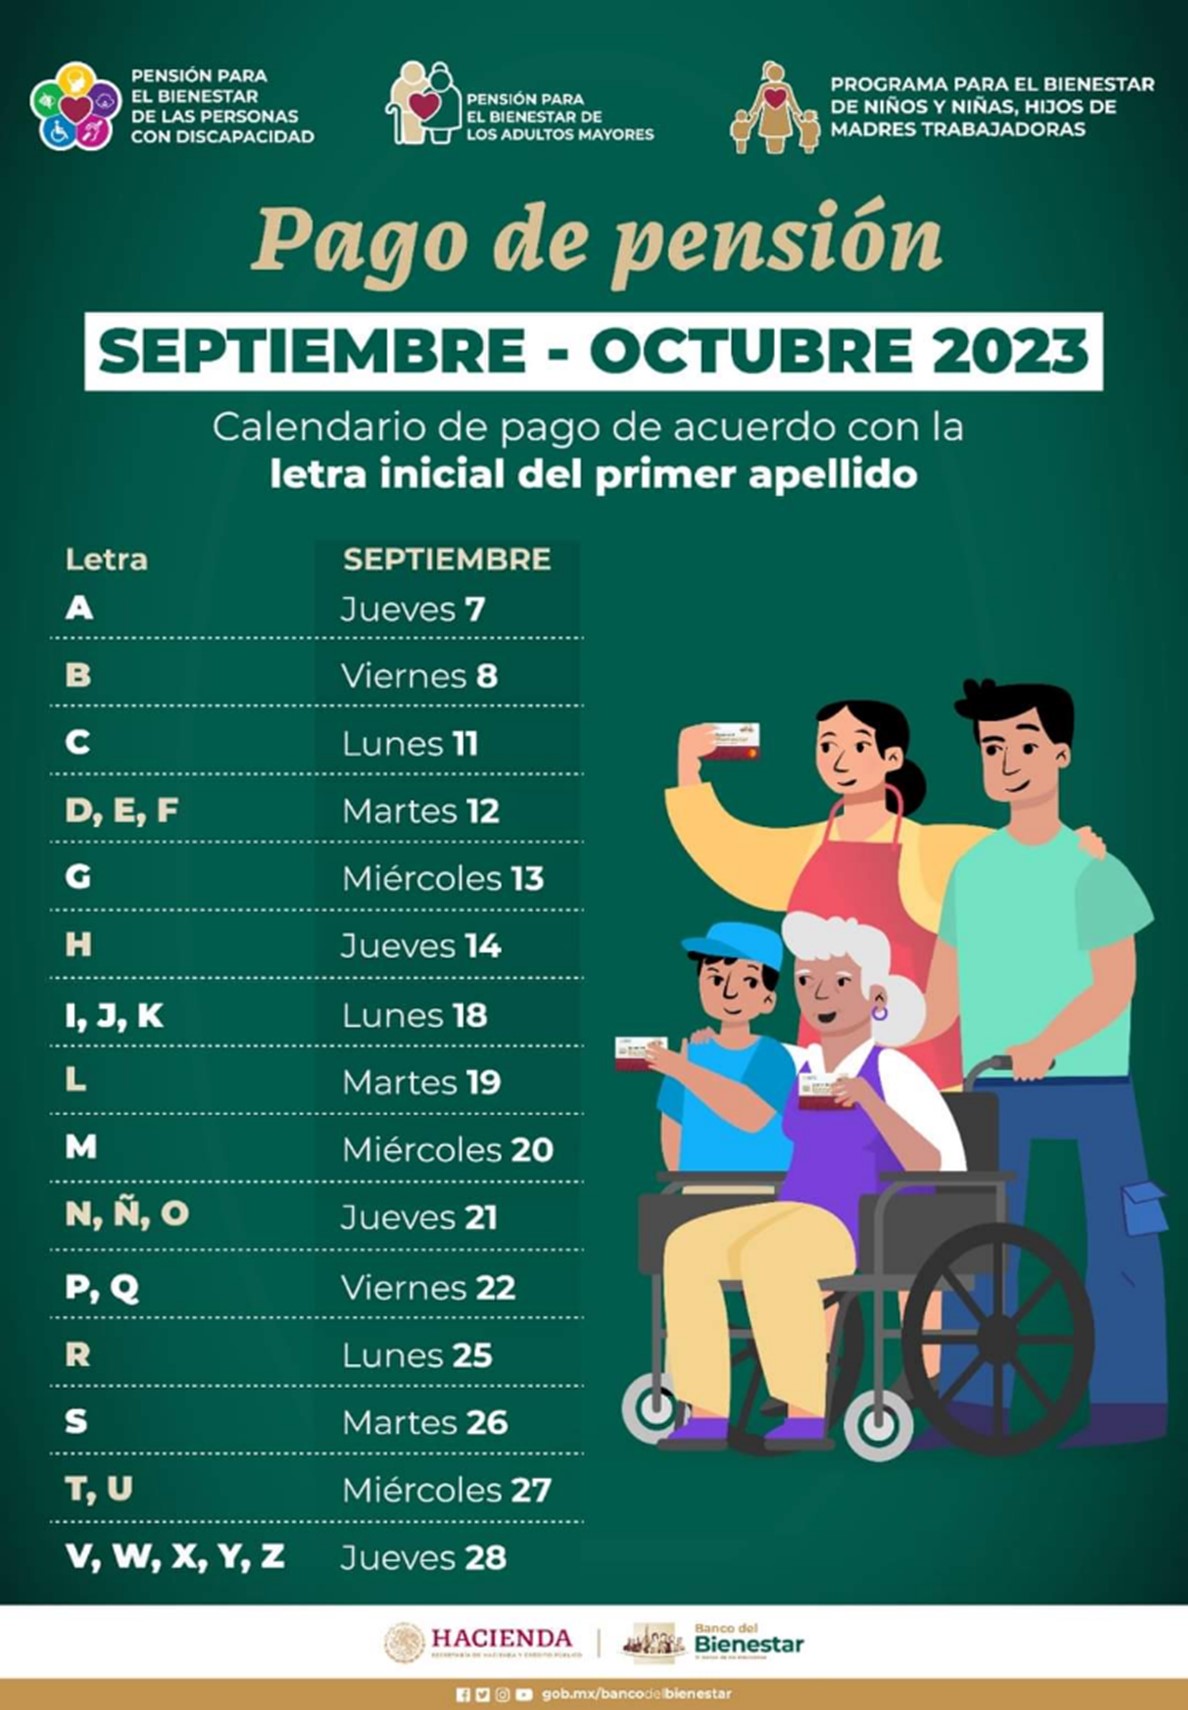 Calendario Oficial de pagos de la Pensión del Bienestar en el mes de septiembre 2023